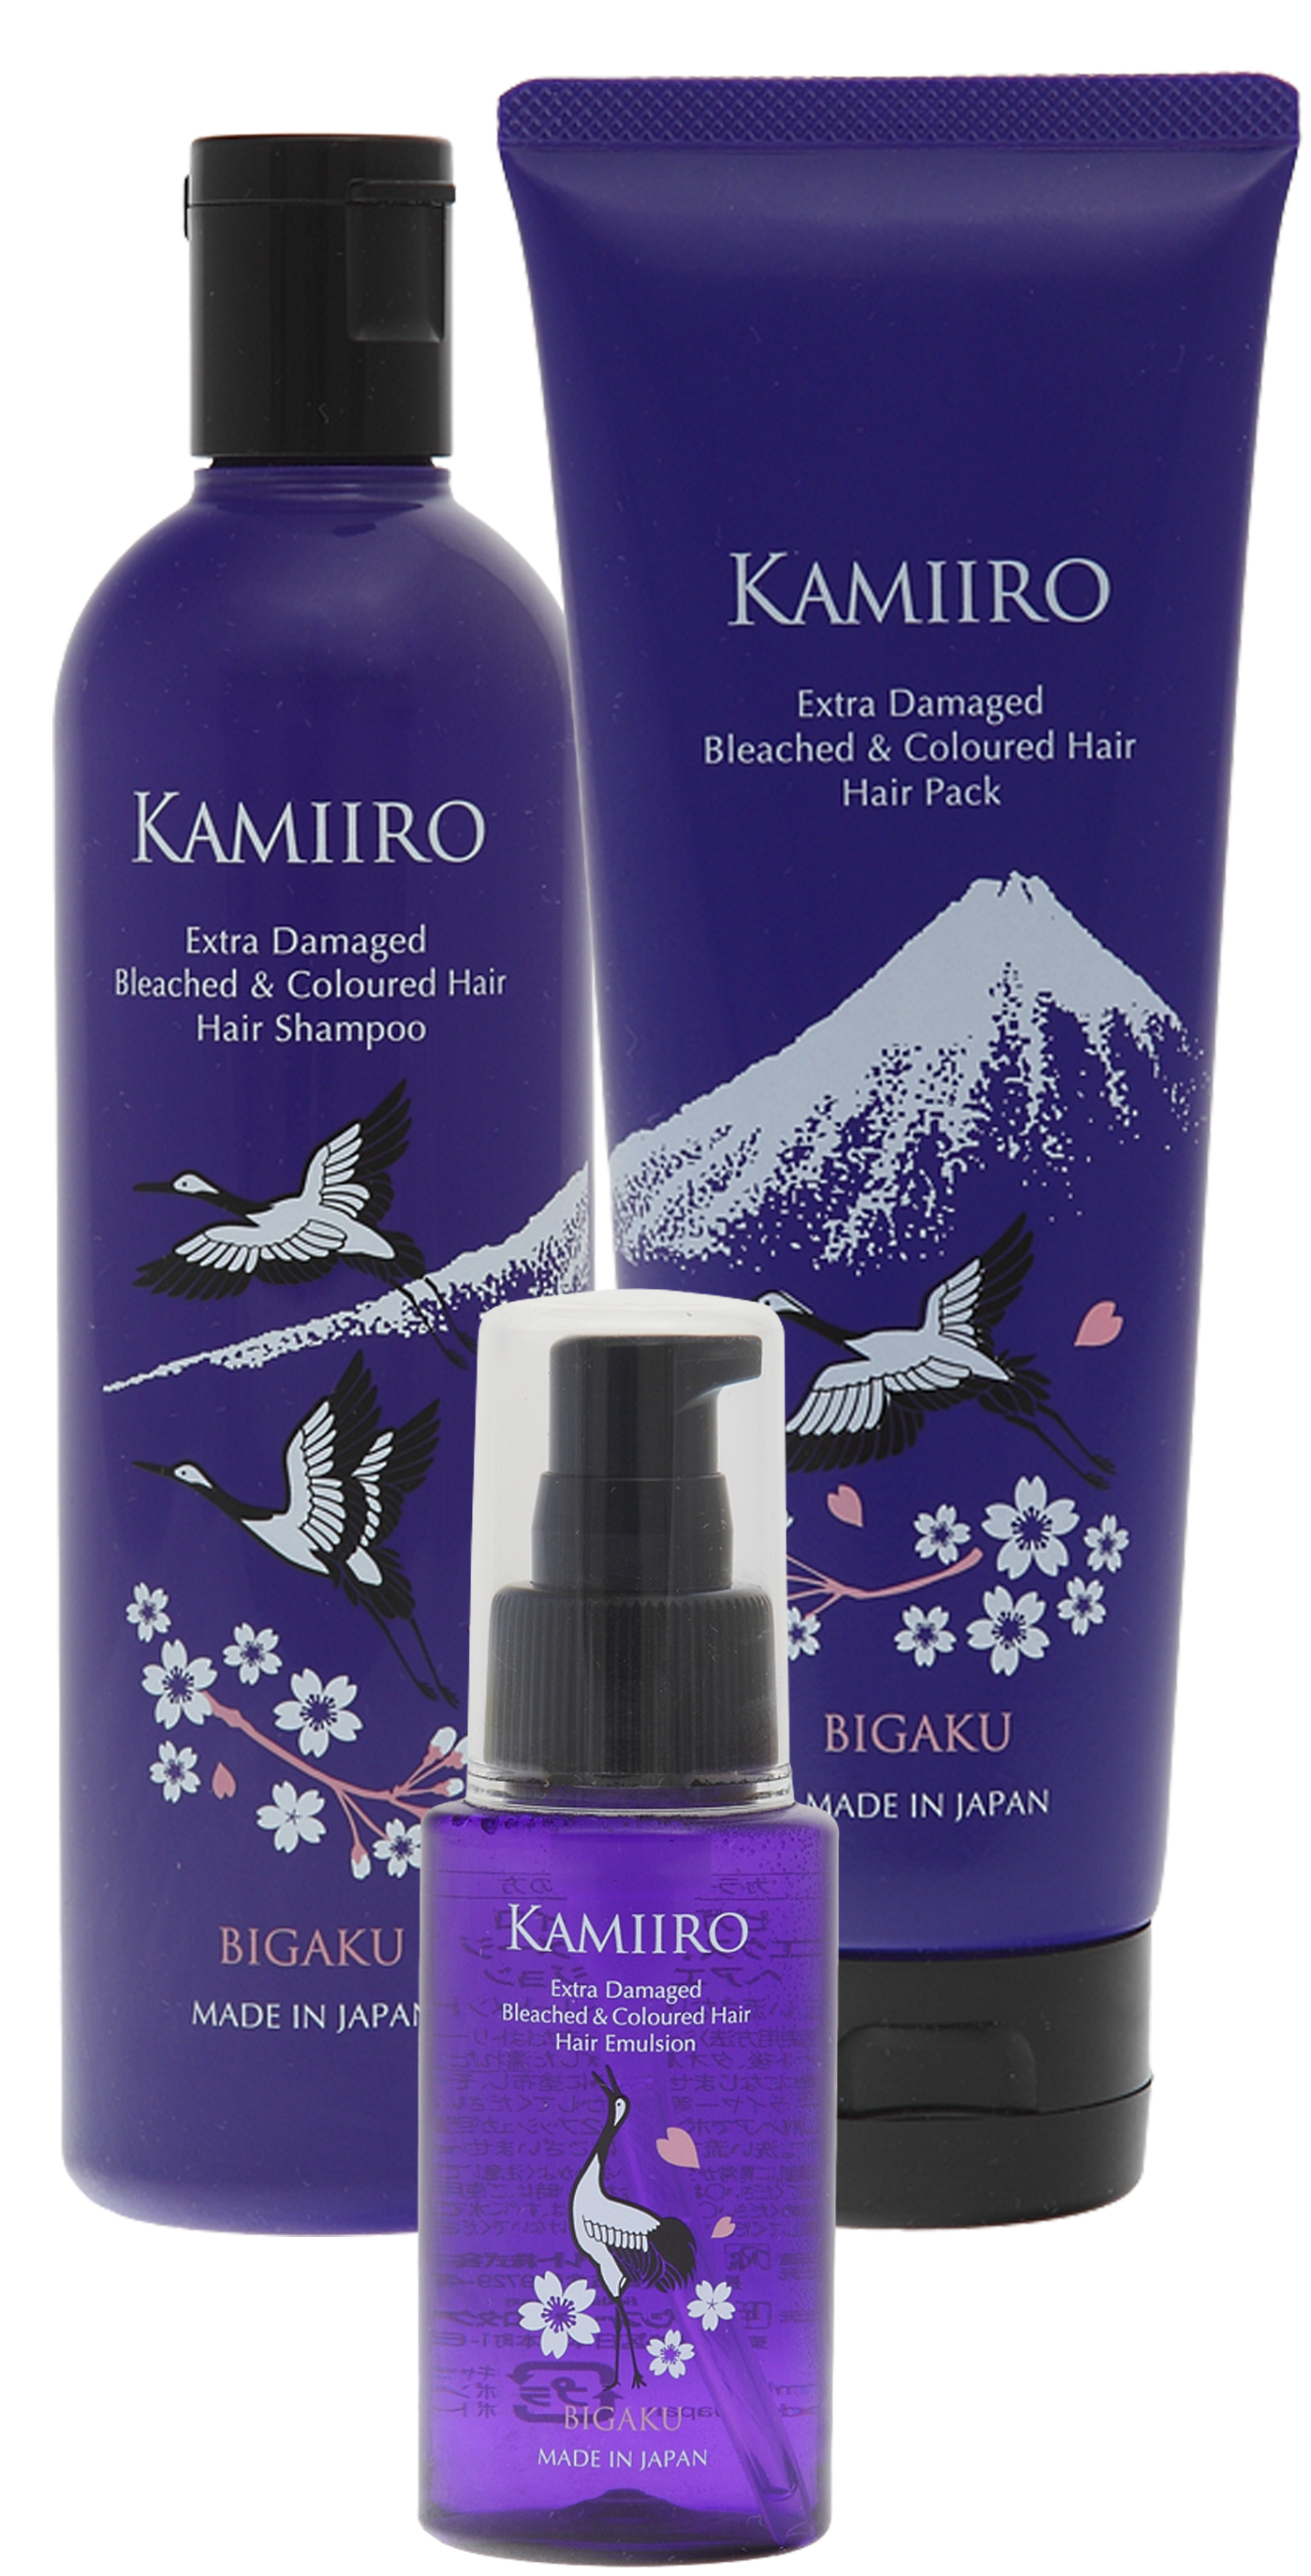 Kamiiro Extra Damaged набор шампунь, маска и эмульсия для осветленных волос, 330мл + 250г + 60мл